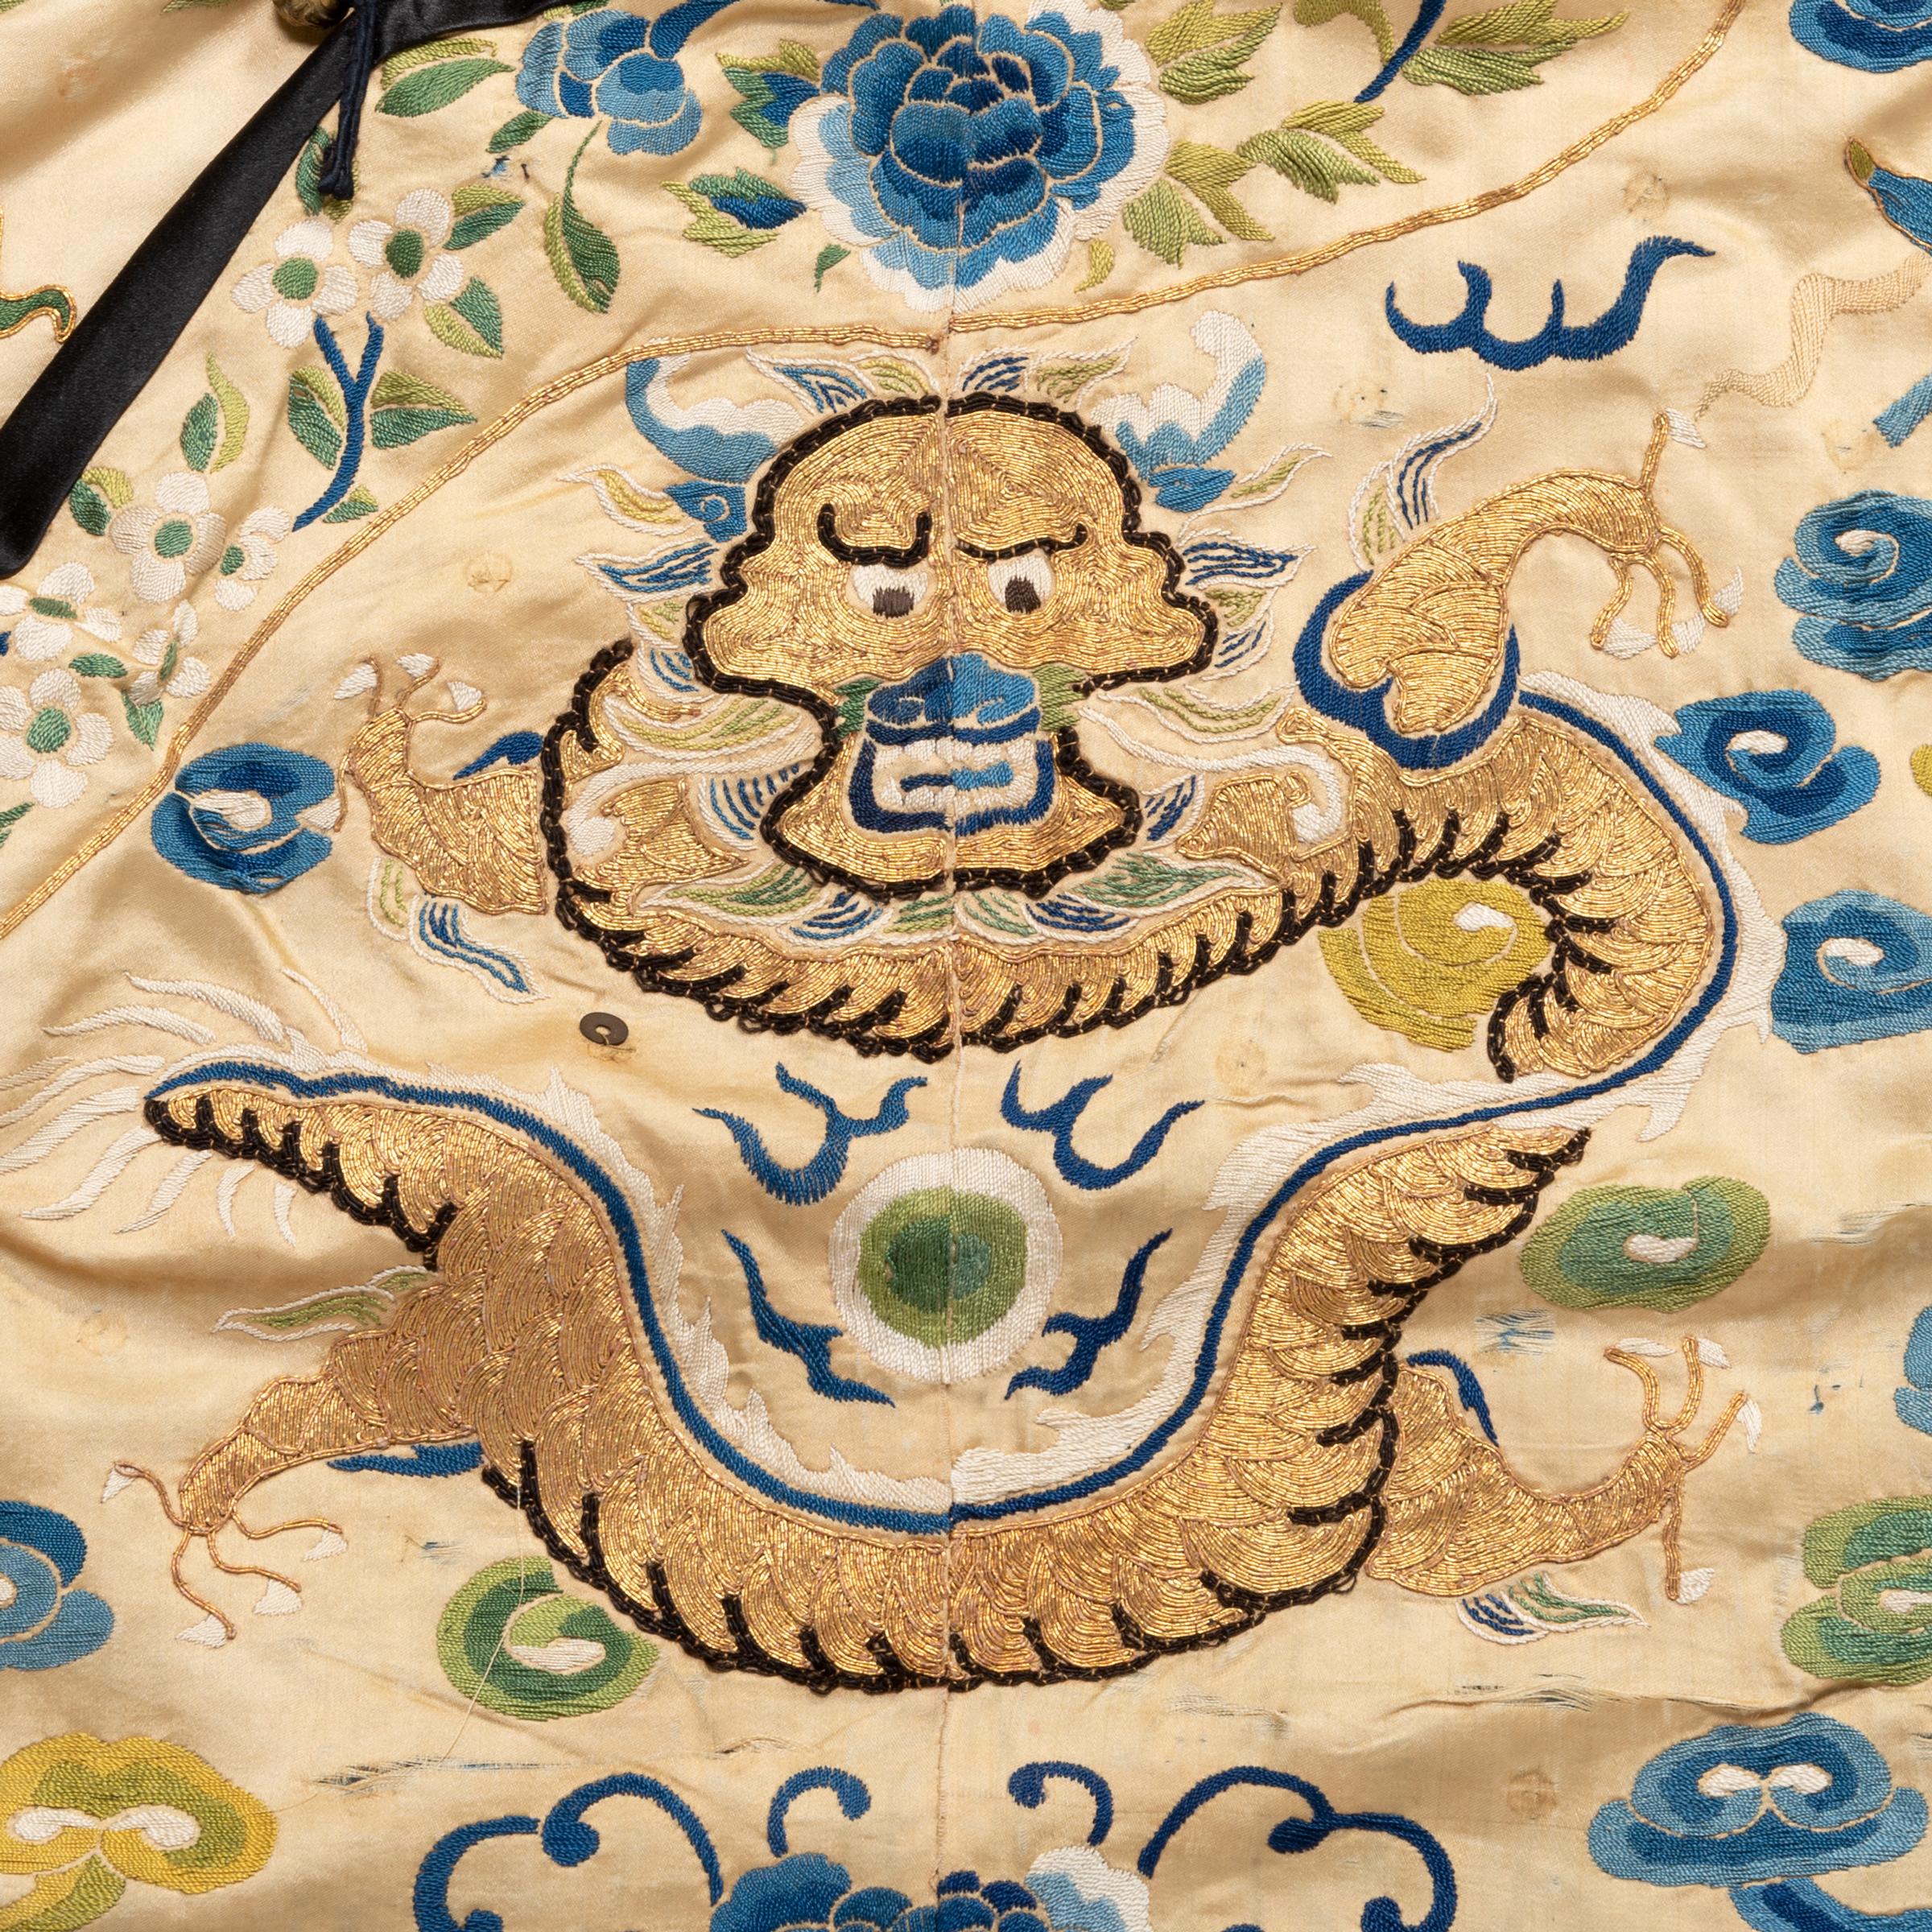 Exquisite Stickereien bilden eine fantastische Kulisse für die mystischen Drachen, die dieses chinesische Gewand aus dem 19. Mit großer Detailtreue und Fantasie dargestellt, wirbeln goldene Drachen über das Kleidungsstück, durch ein himmlisches